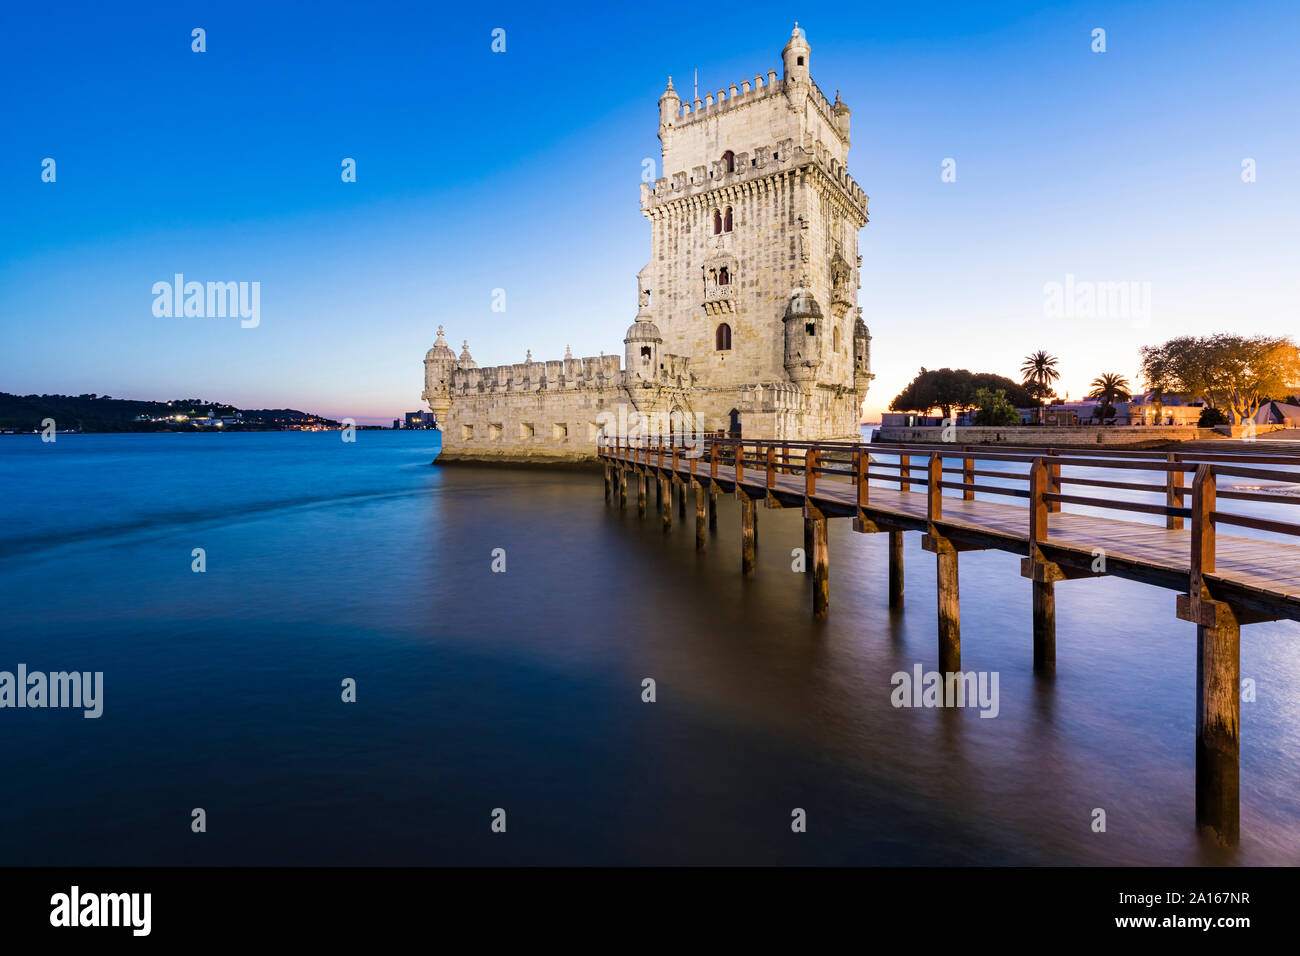 Portugal, Lisbonne, la Tour de Belém sur tage au coucher du soleil Banque D'Images